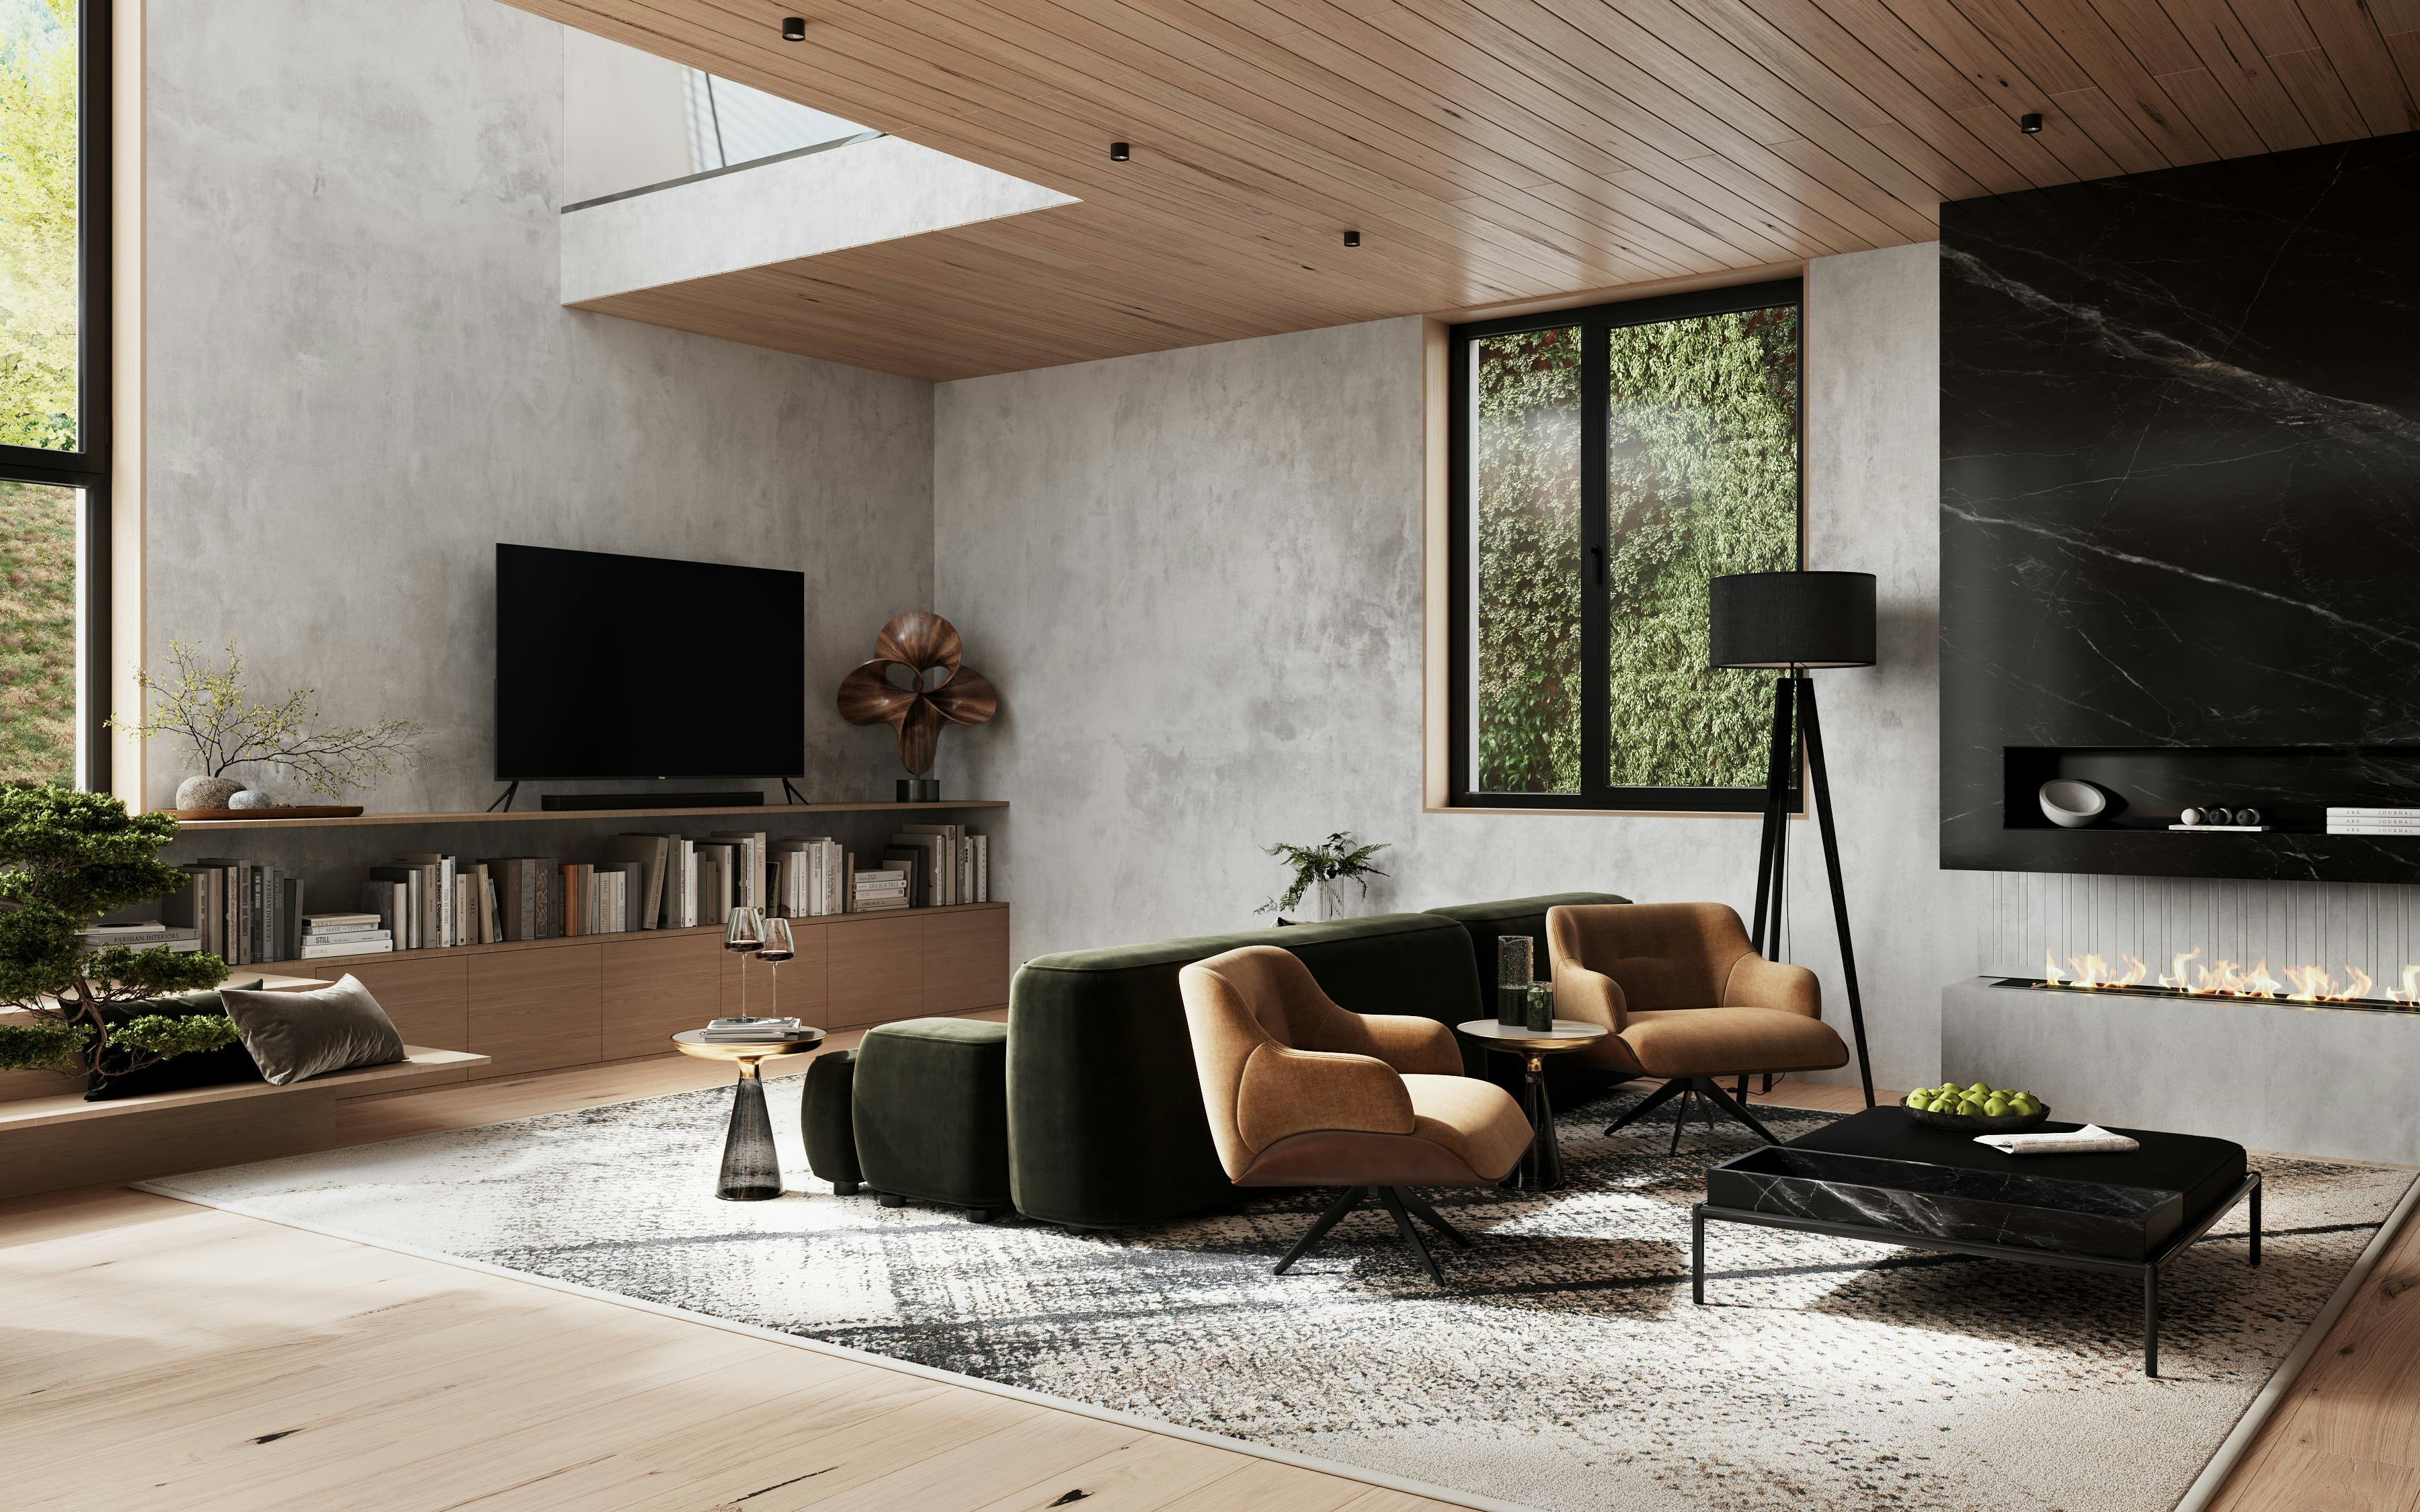 3D Architekturvisualisierung von Wohnzimmer mit Kamin in einem Einfamilienhaus in Berlin, Deutschland